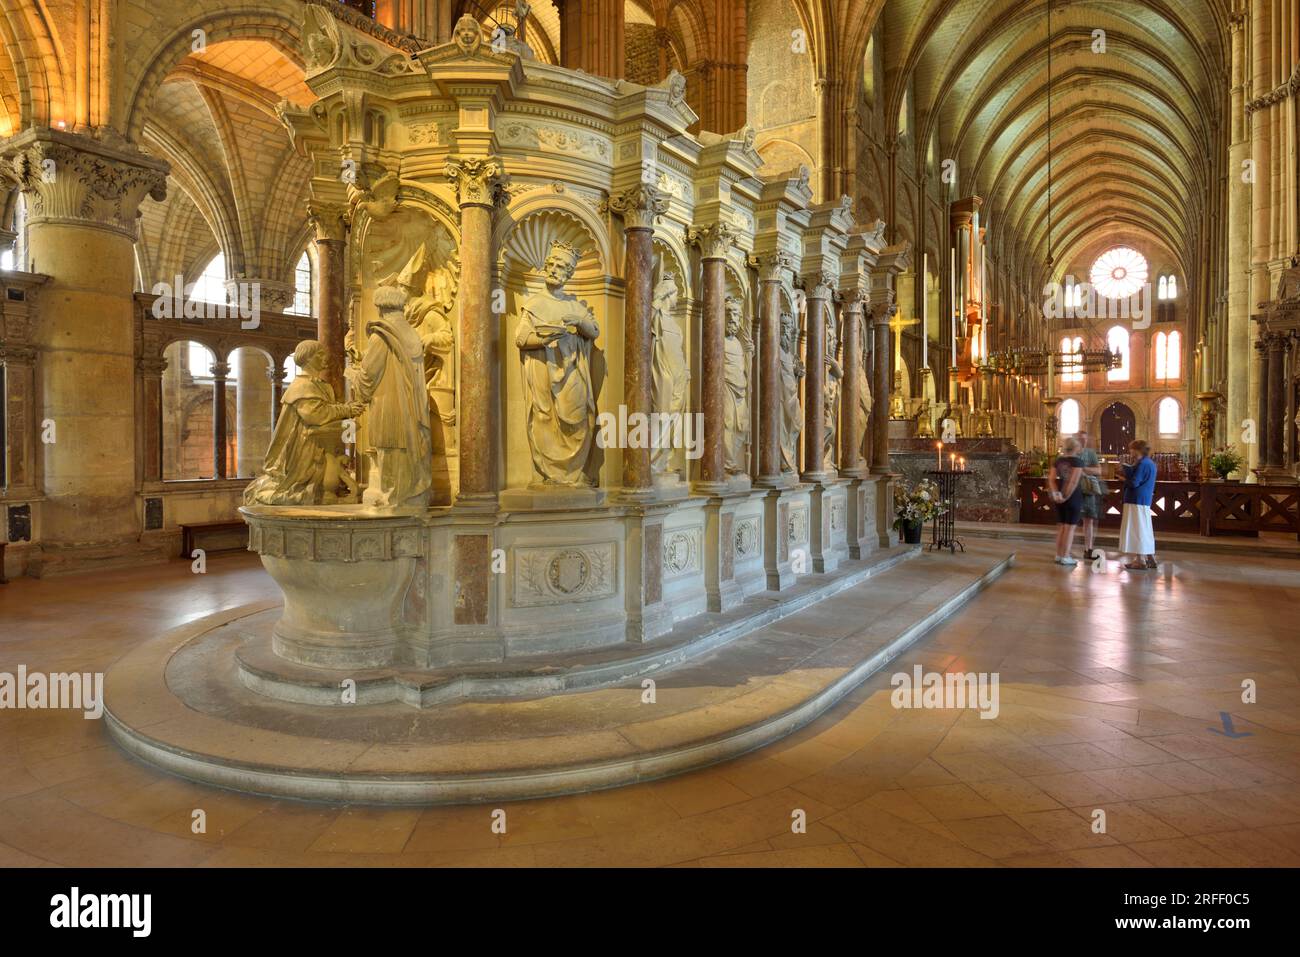 Francia, Marne, Reims, Basílica de San Remi declarada Patrimonio de la Humanidad por la UNESCO, construida alrededor del año 1000, tumba de San Remi en el coro Foto de stock